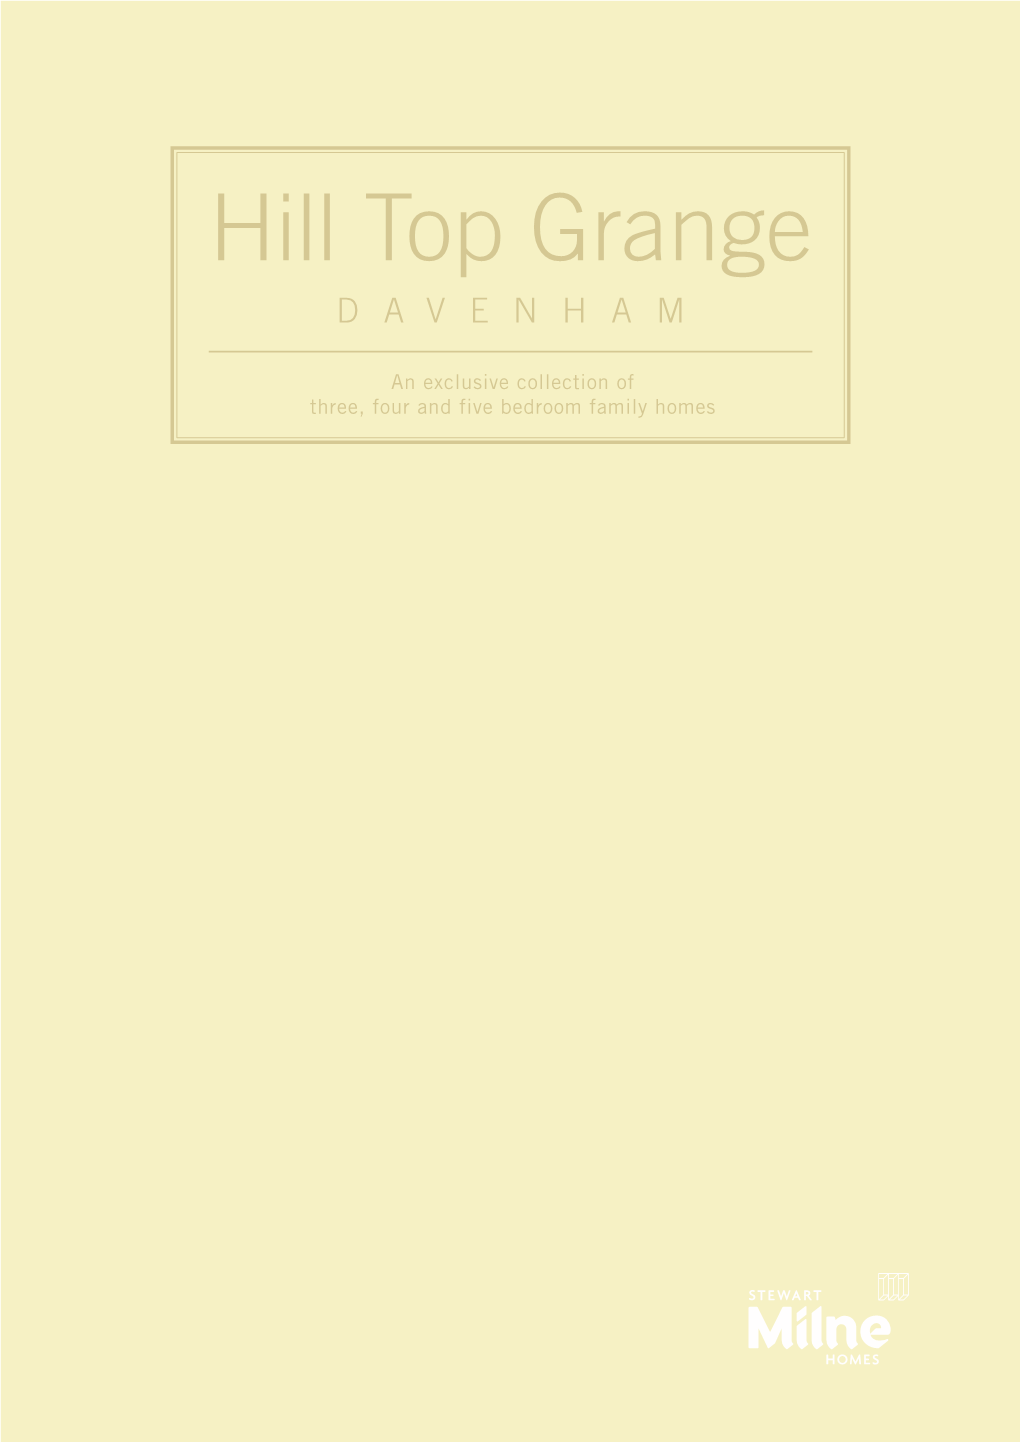 Hill Top Grange DAVENHAM